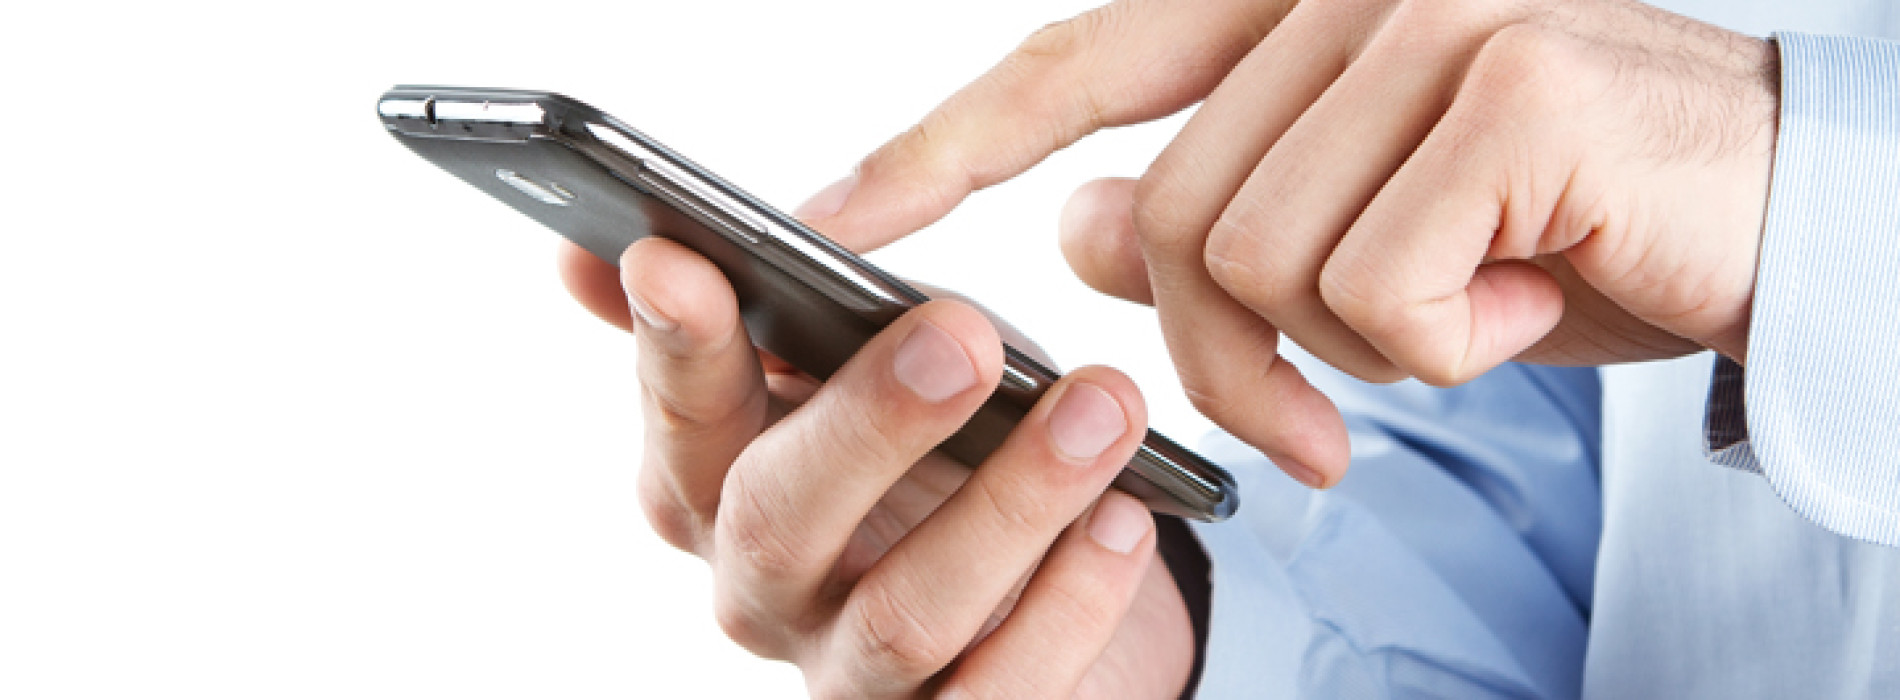 Płatności mobilne ponownie bardziej skłonne ku rozwiązaniom NFC niż tym opartym na przetwarzaniu w chmurze